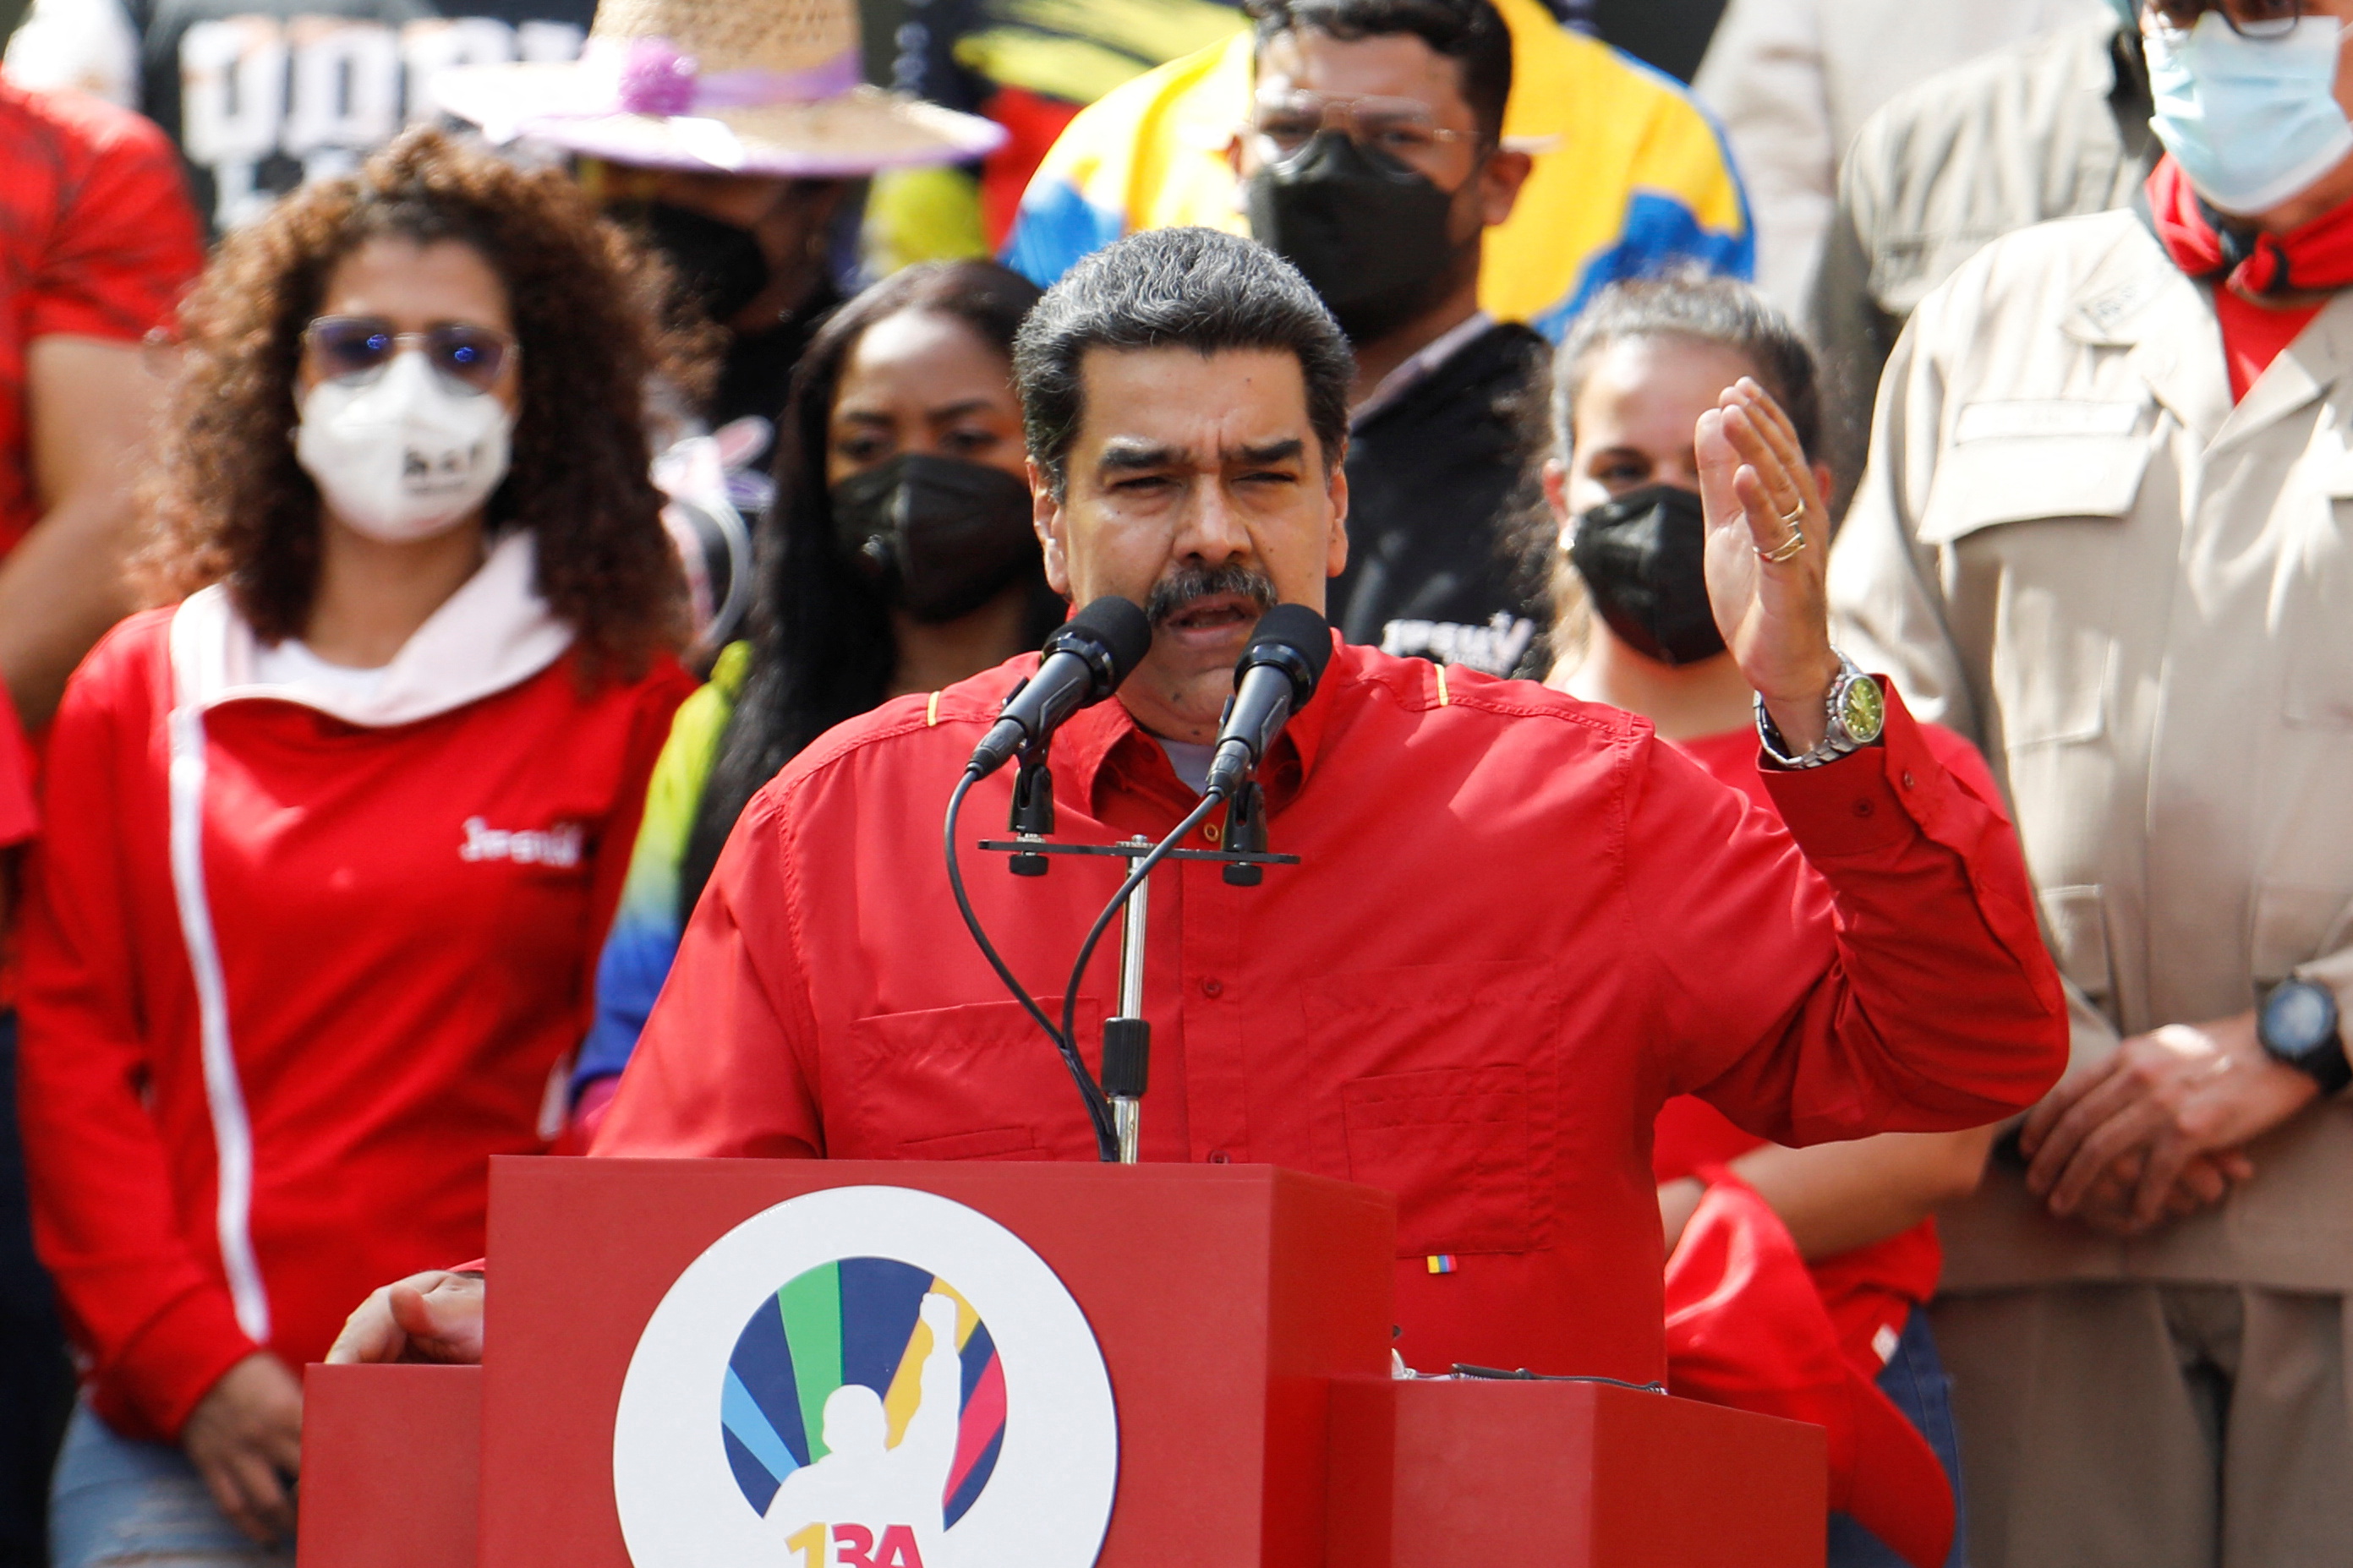 A oposição venezuelana considerou um novo fracasso do regime de Maduro, o apelo à reativação da investigação no TPI, como um novo fracasso do regime de Maduro.